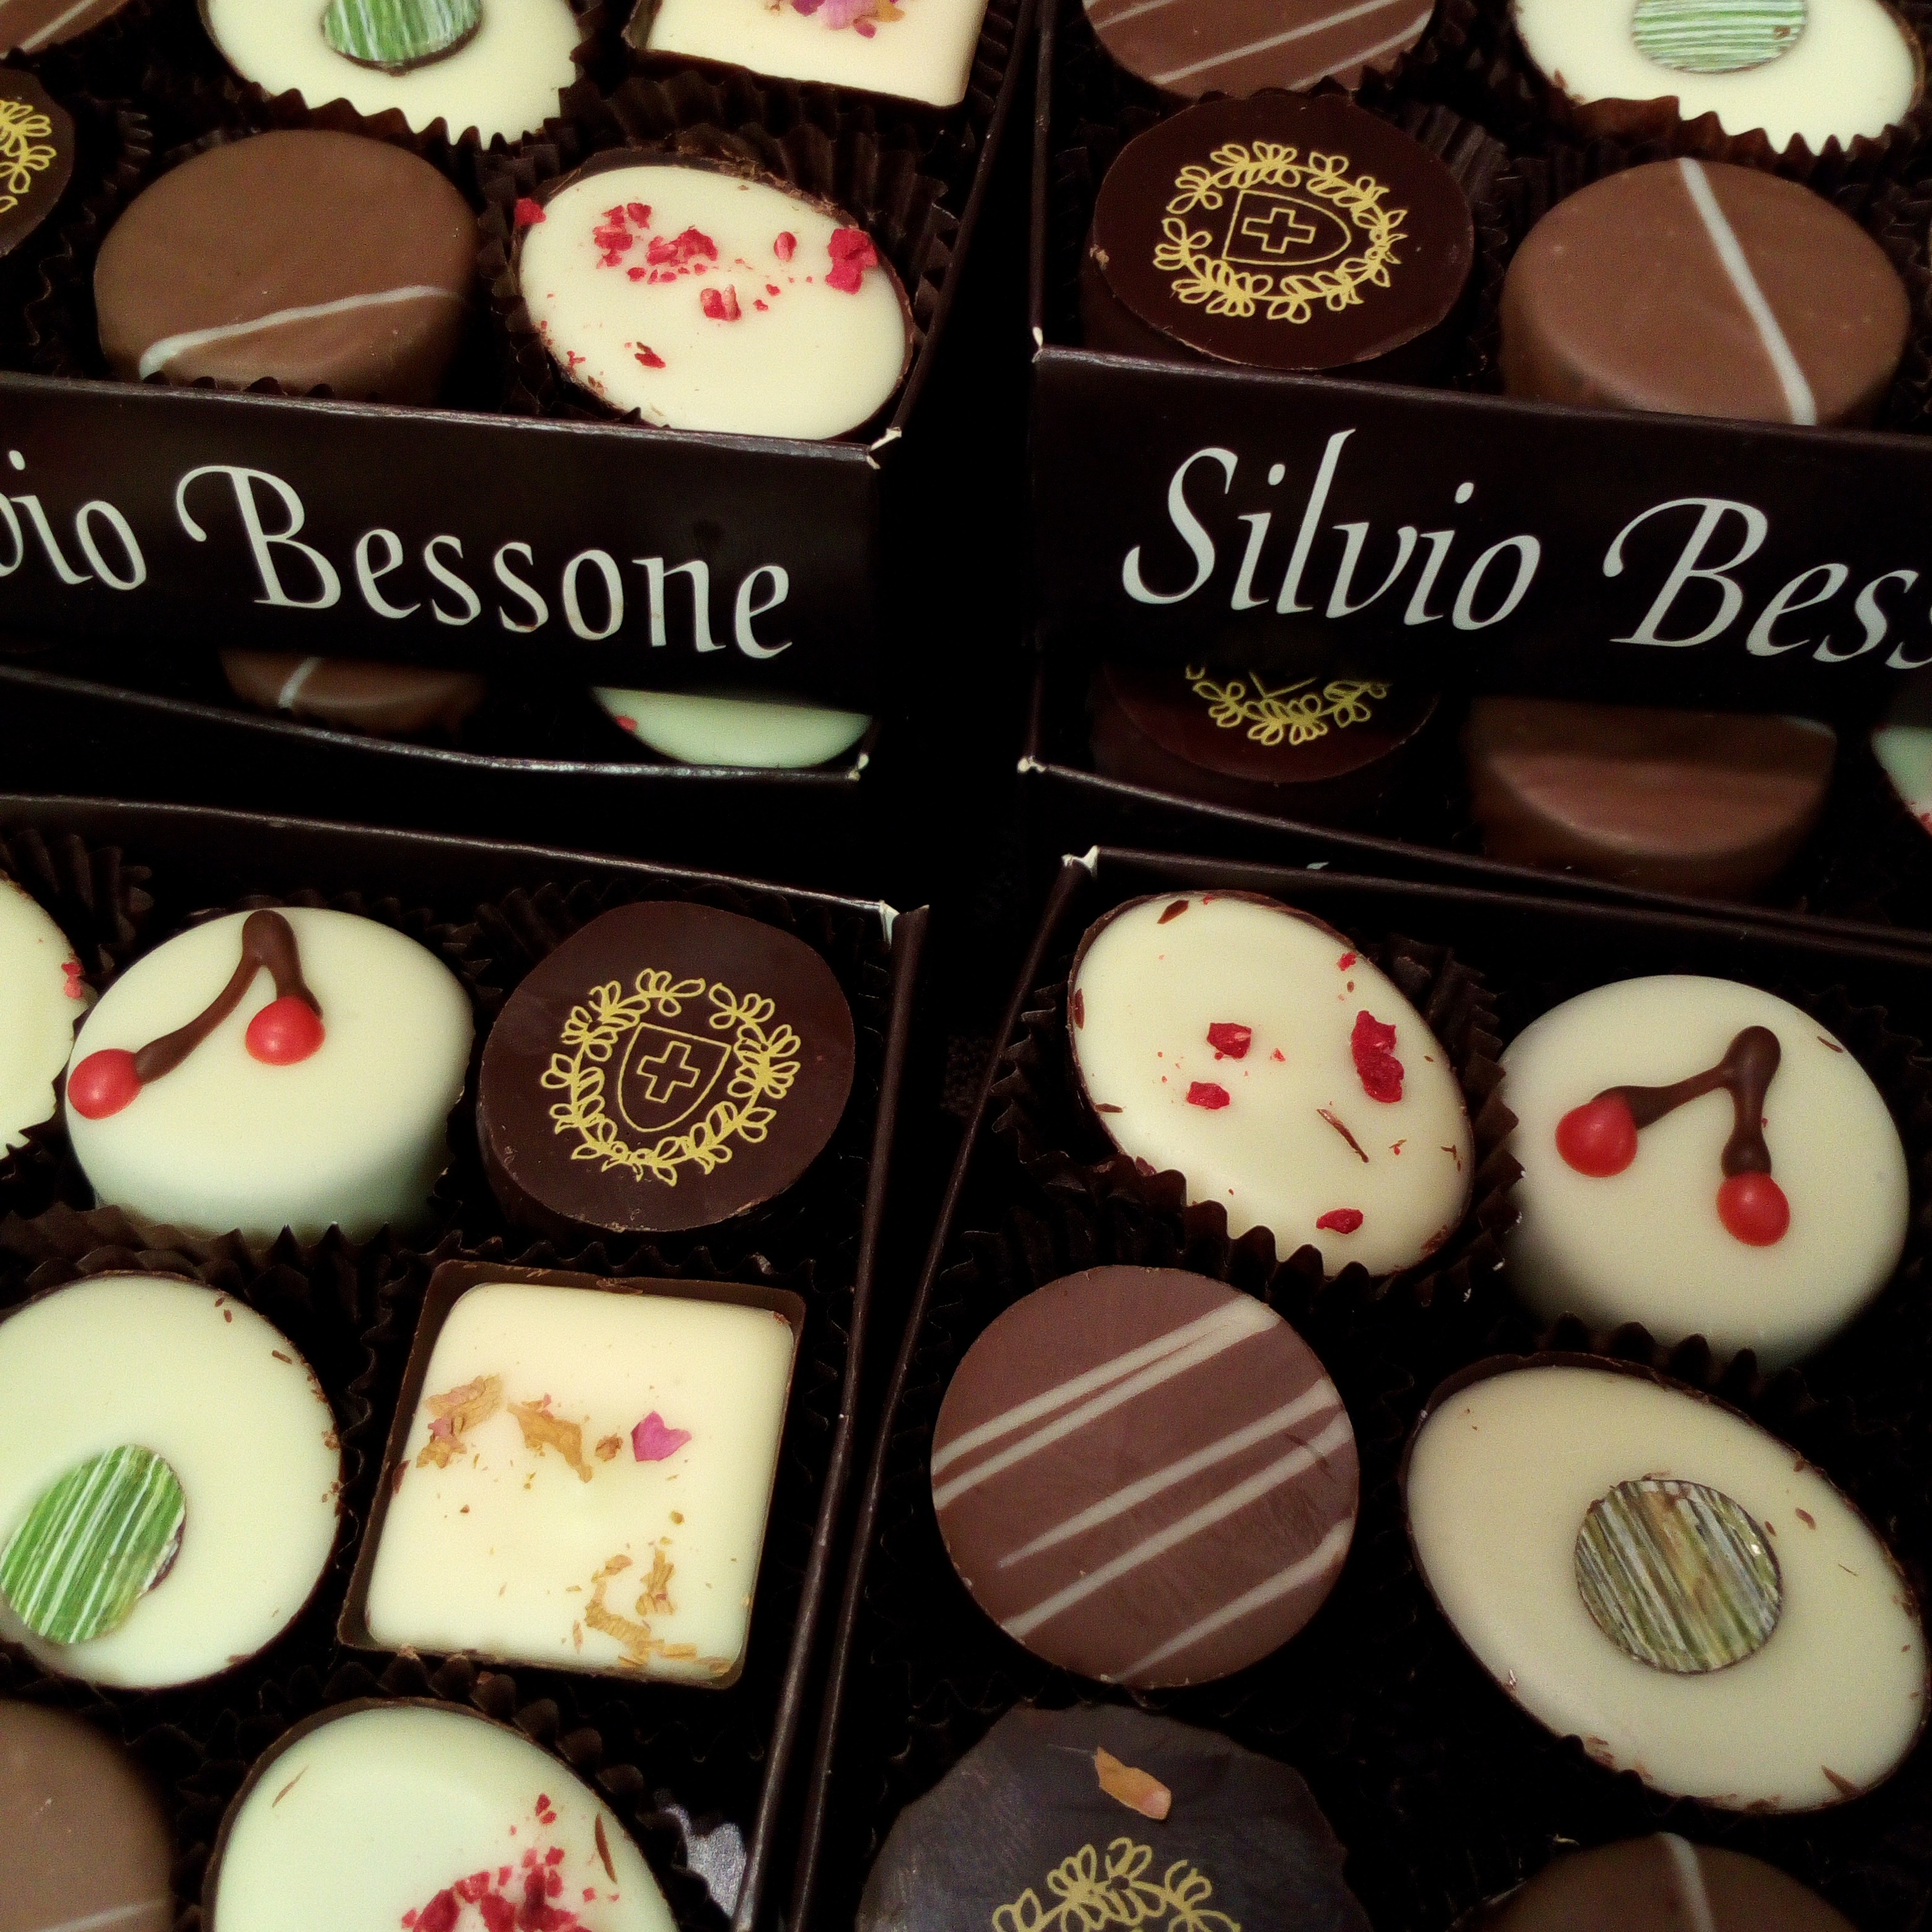 Silvio Bessone présente la nouvelle collection Chocolats pour 2019.